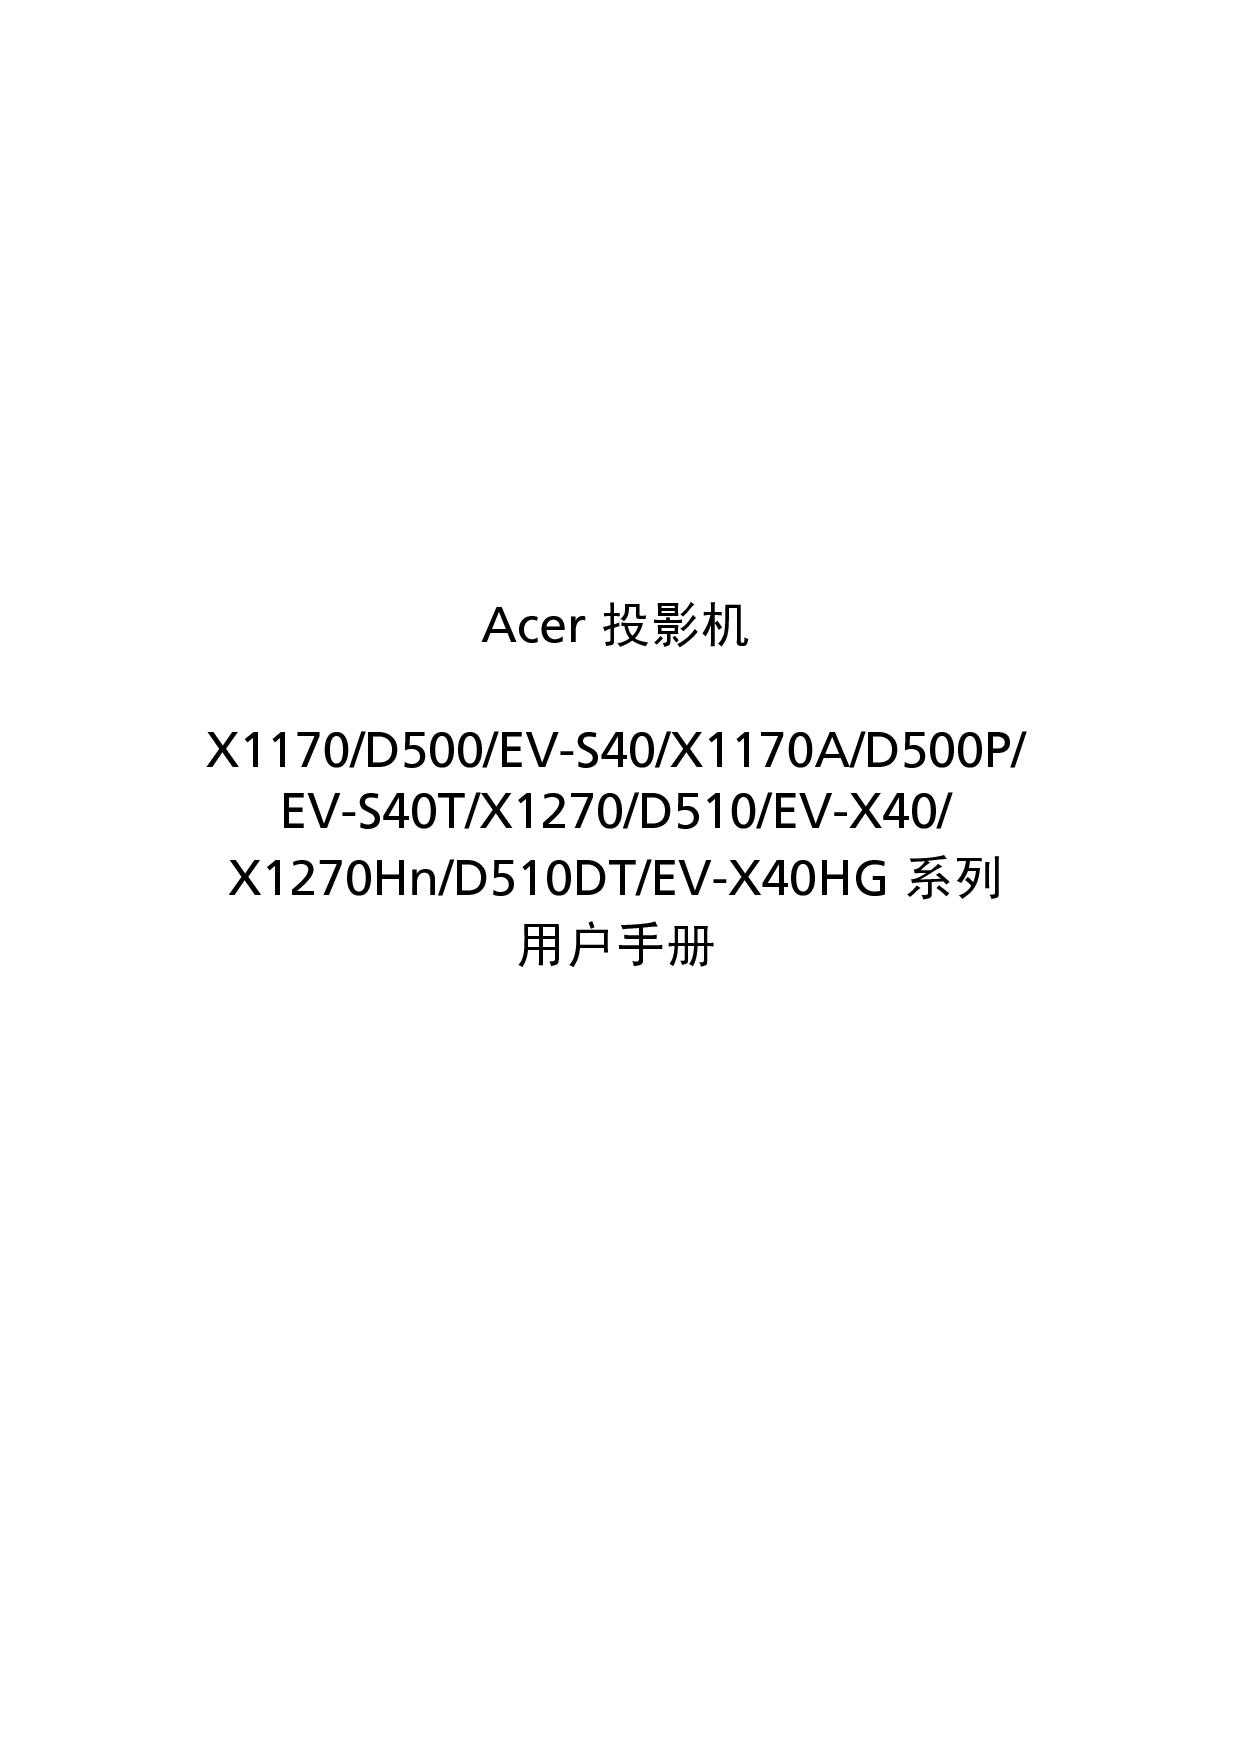 宏碁 Acer D500, D510DT, EV-S40, X1170 用户手册 封面